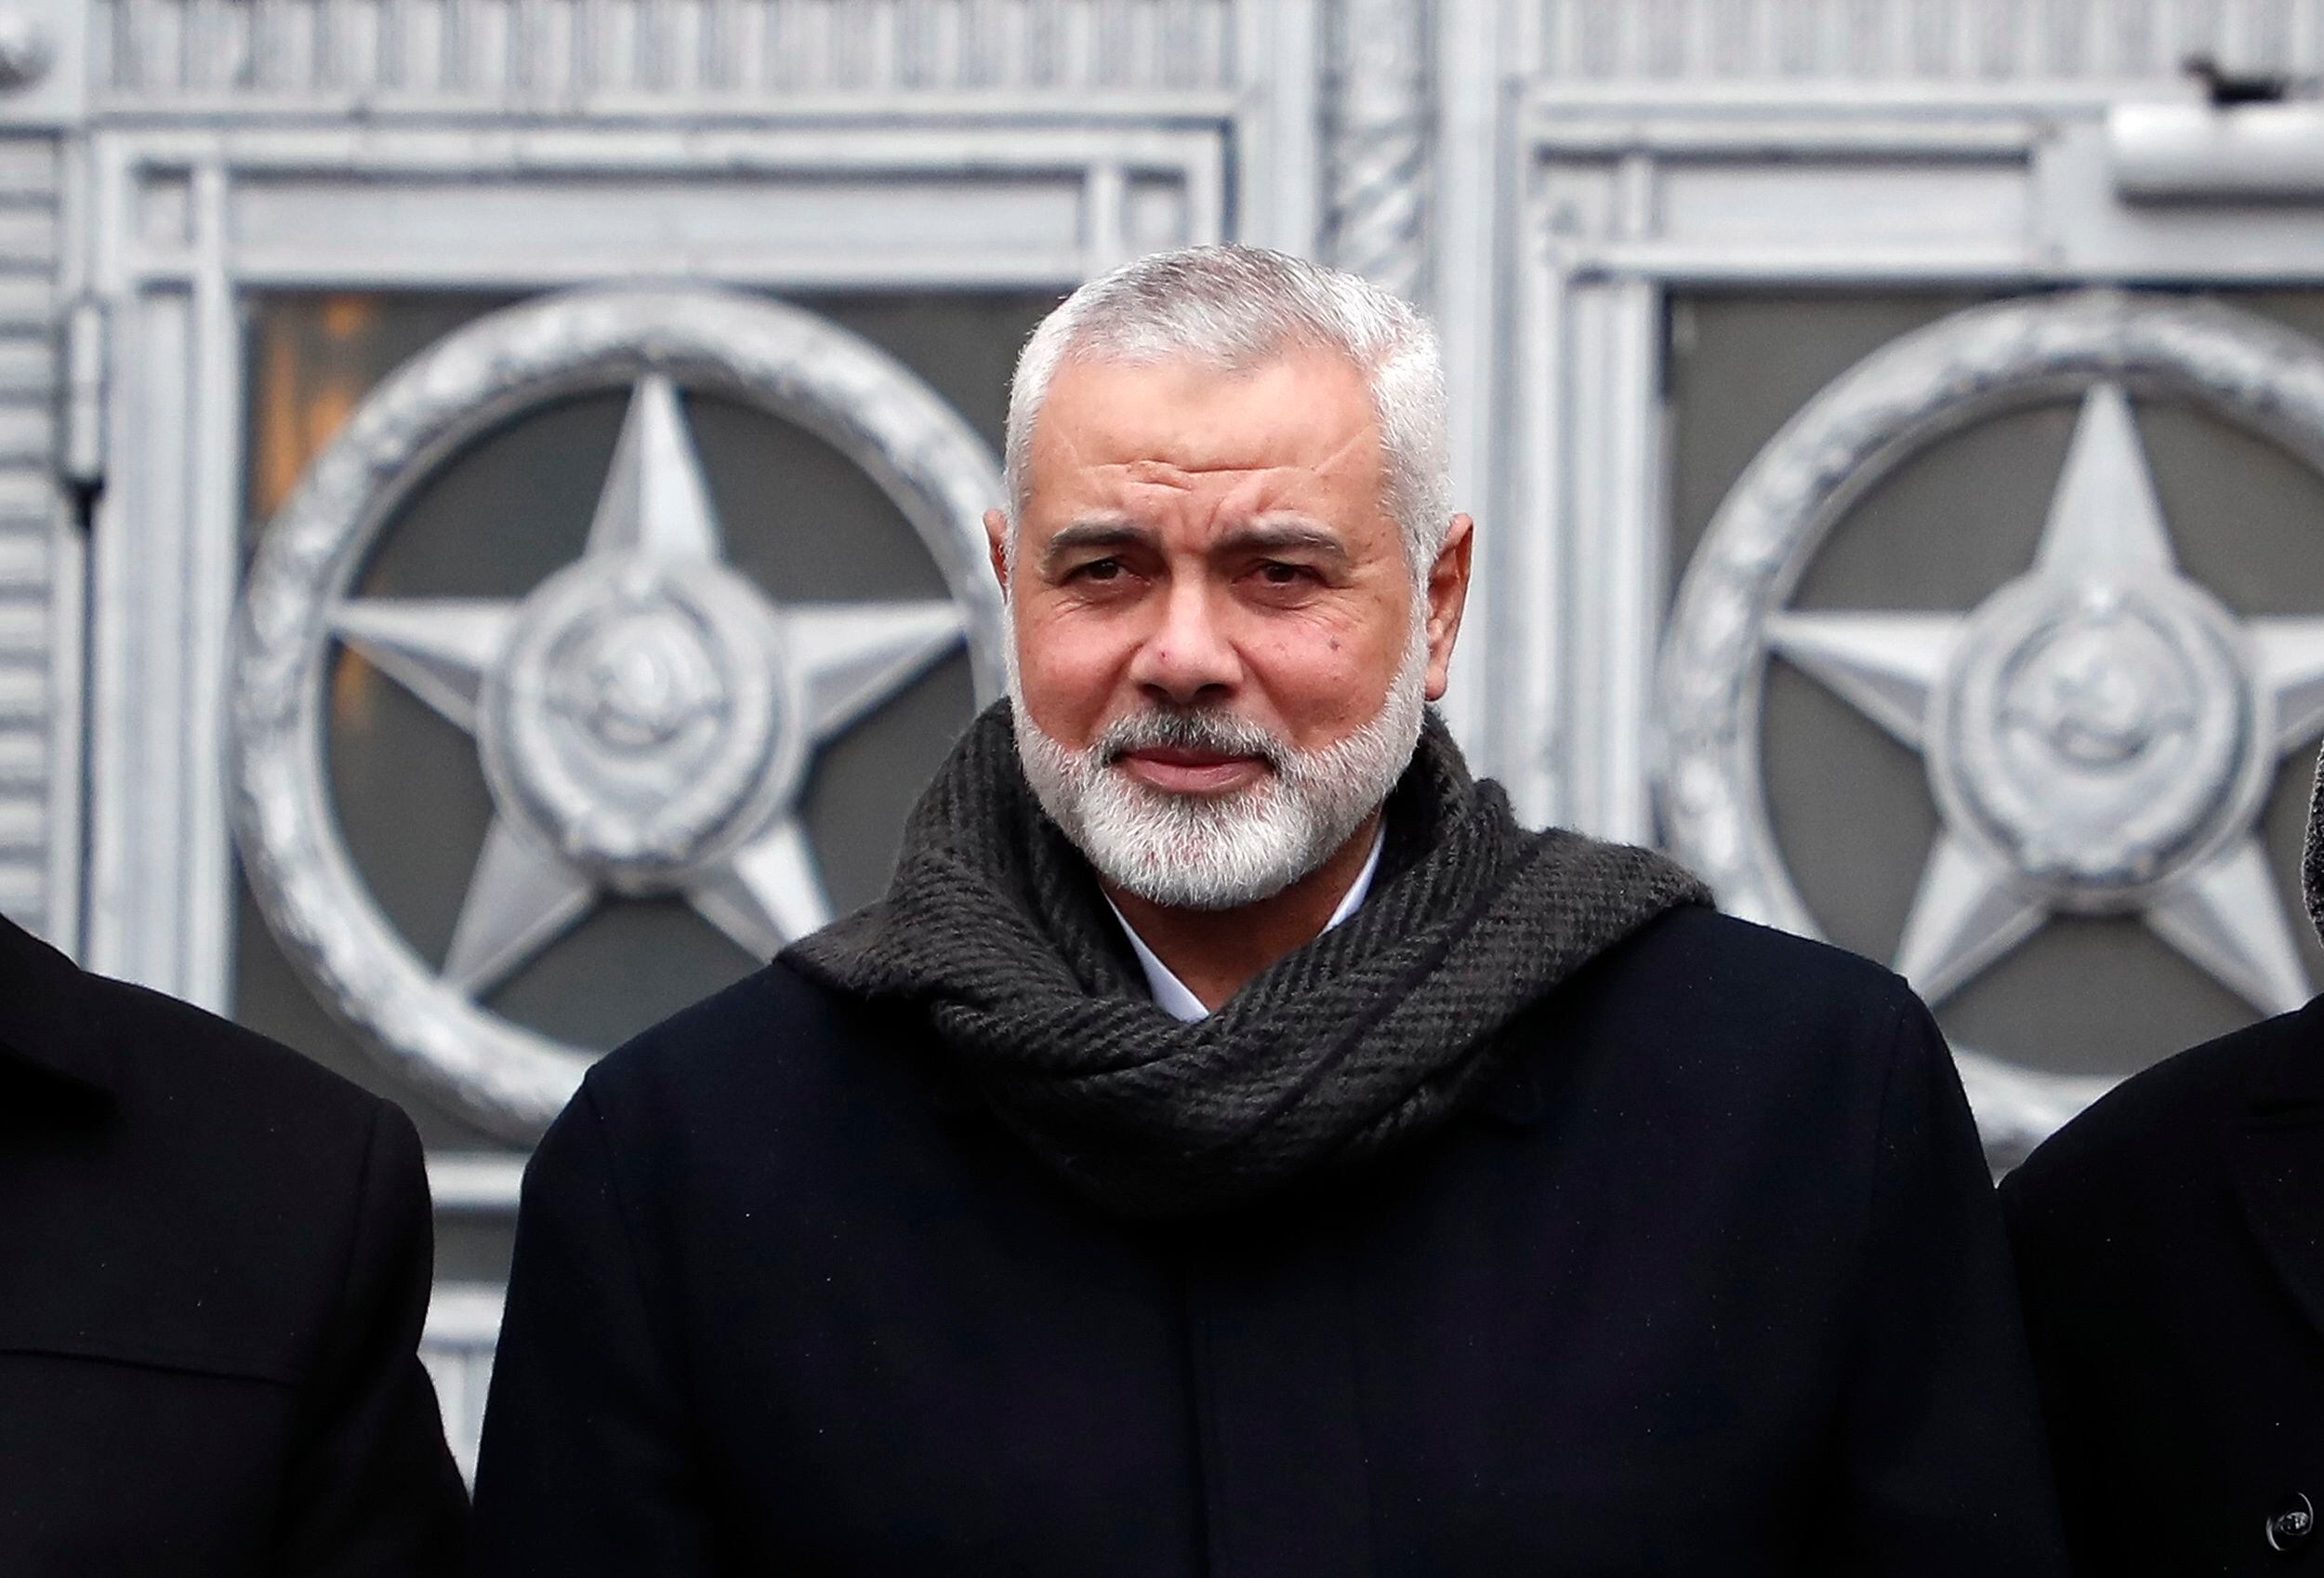 El líder del movimiento islamista palestino Hamás, Ismail Haniye. EFE/EPA/MAXIM SHIPENKOV/Archivo